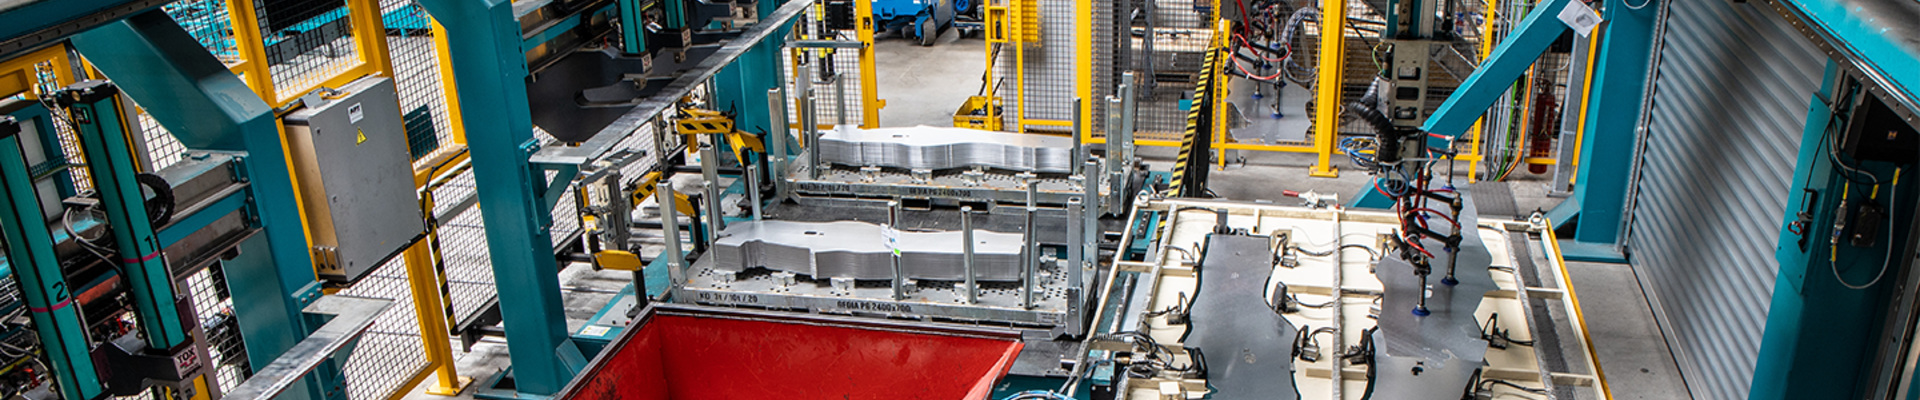 Blick in eine Produktionsstätte, in der auf einer Maschinenstraße Autoteile aus Metall gefertigt werden.